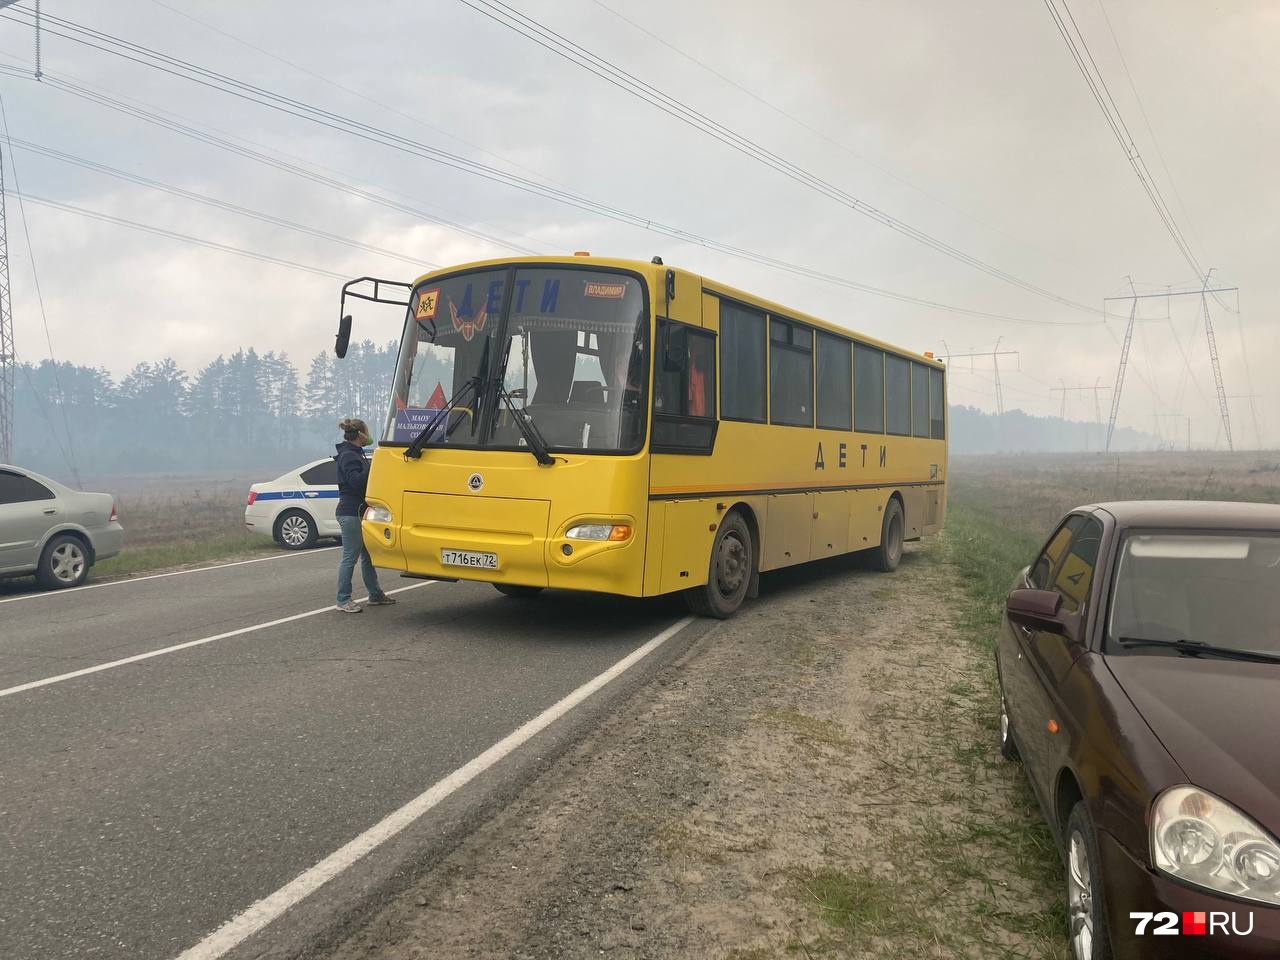 К деревне пригнали автобусы, а дорогу перекрыли. Отдыхающих в «Красной гвоздике» эвакуировали, жителей Криводанова тоже предупредили о возможной угрозе